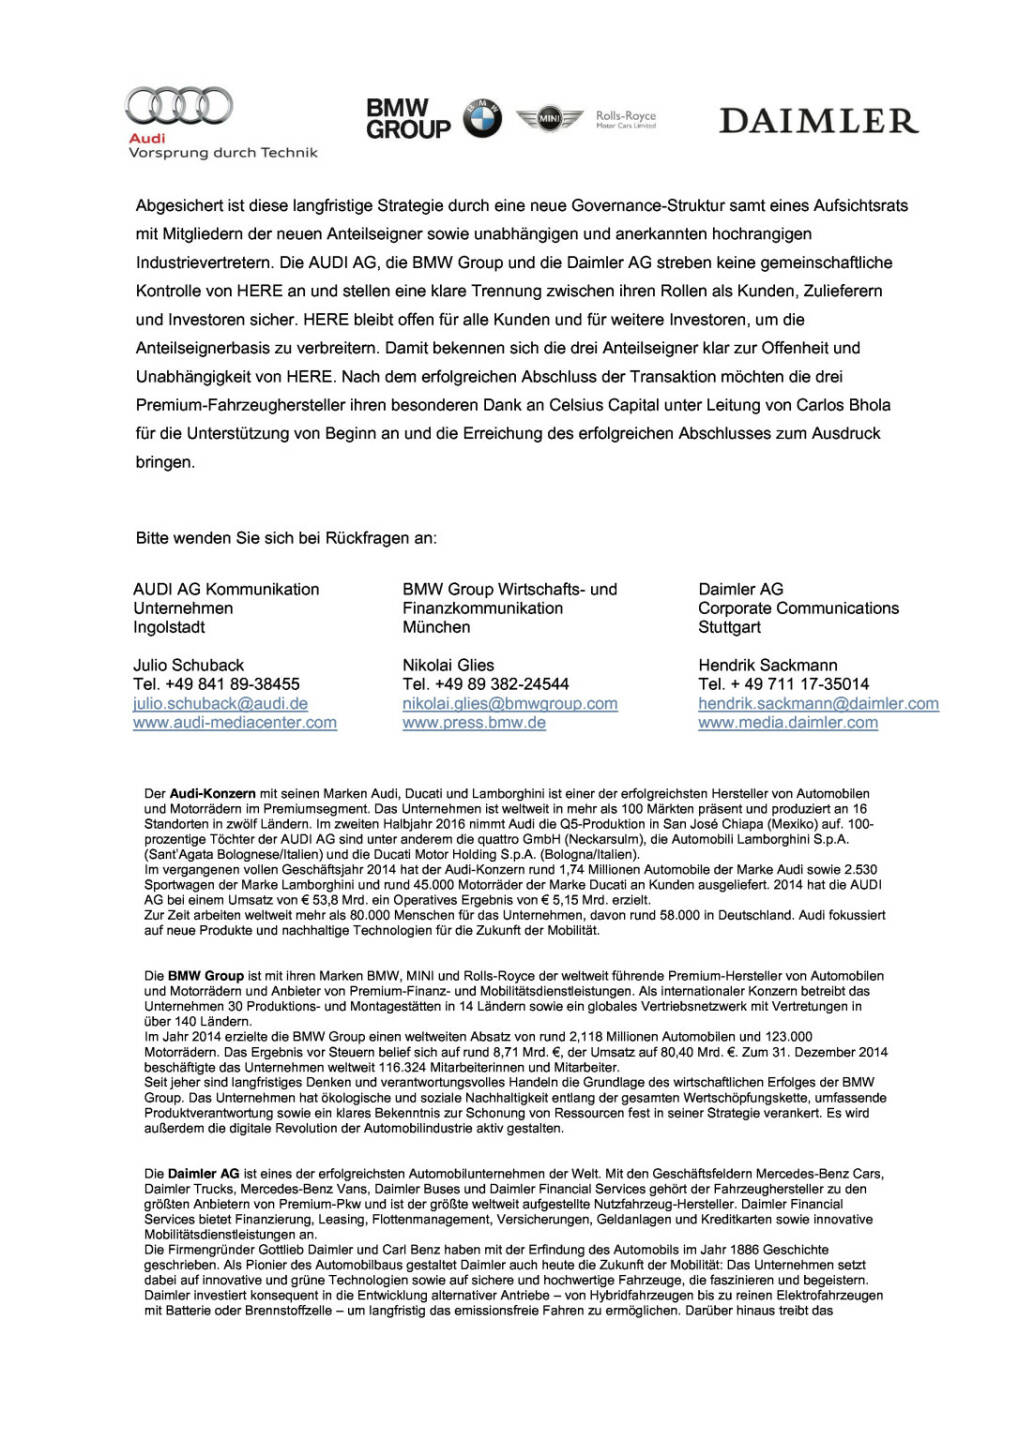 Audi, BMW Group und Daimler AG schließen Kauf von Here erfolgreich ab, Seite 3/4, komplettes Dokument unter http://boerse-social.com/static/uploads/file_509_audi_bmw_group_und_daimler_ag_schliessen_kauf_von_here_erfolgreich_ab.pdf